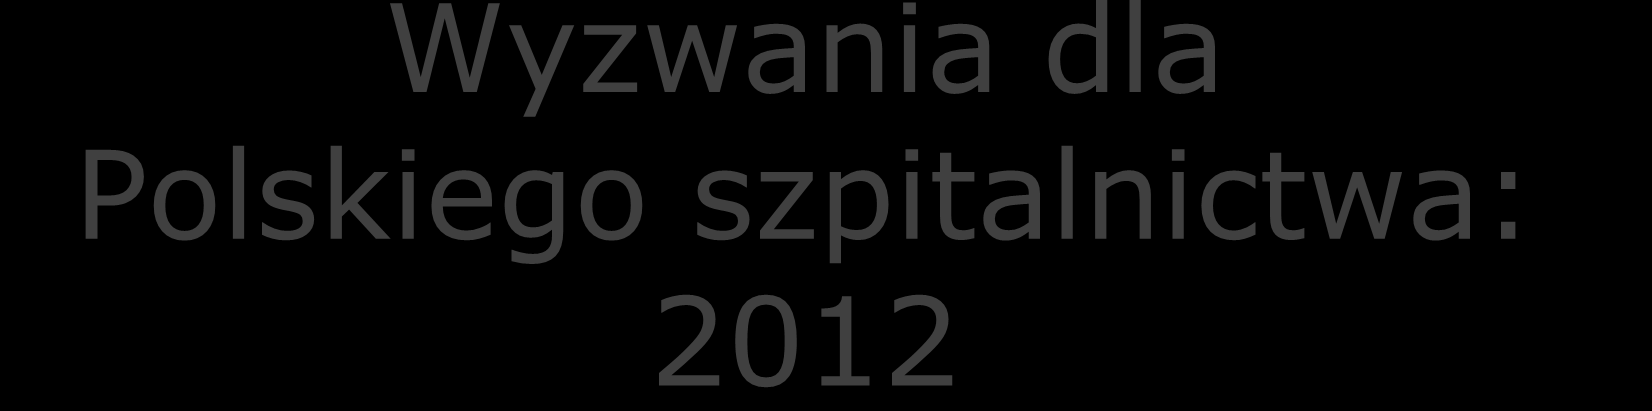 Wyzwania dla Polskiego szpitalnictwa: 2012 Znaczne niedofinansowanie szpitali Opłaty nieformalne Produktywność i czas pracy Strukturę